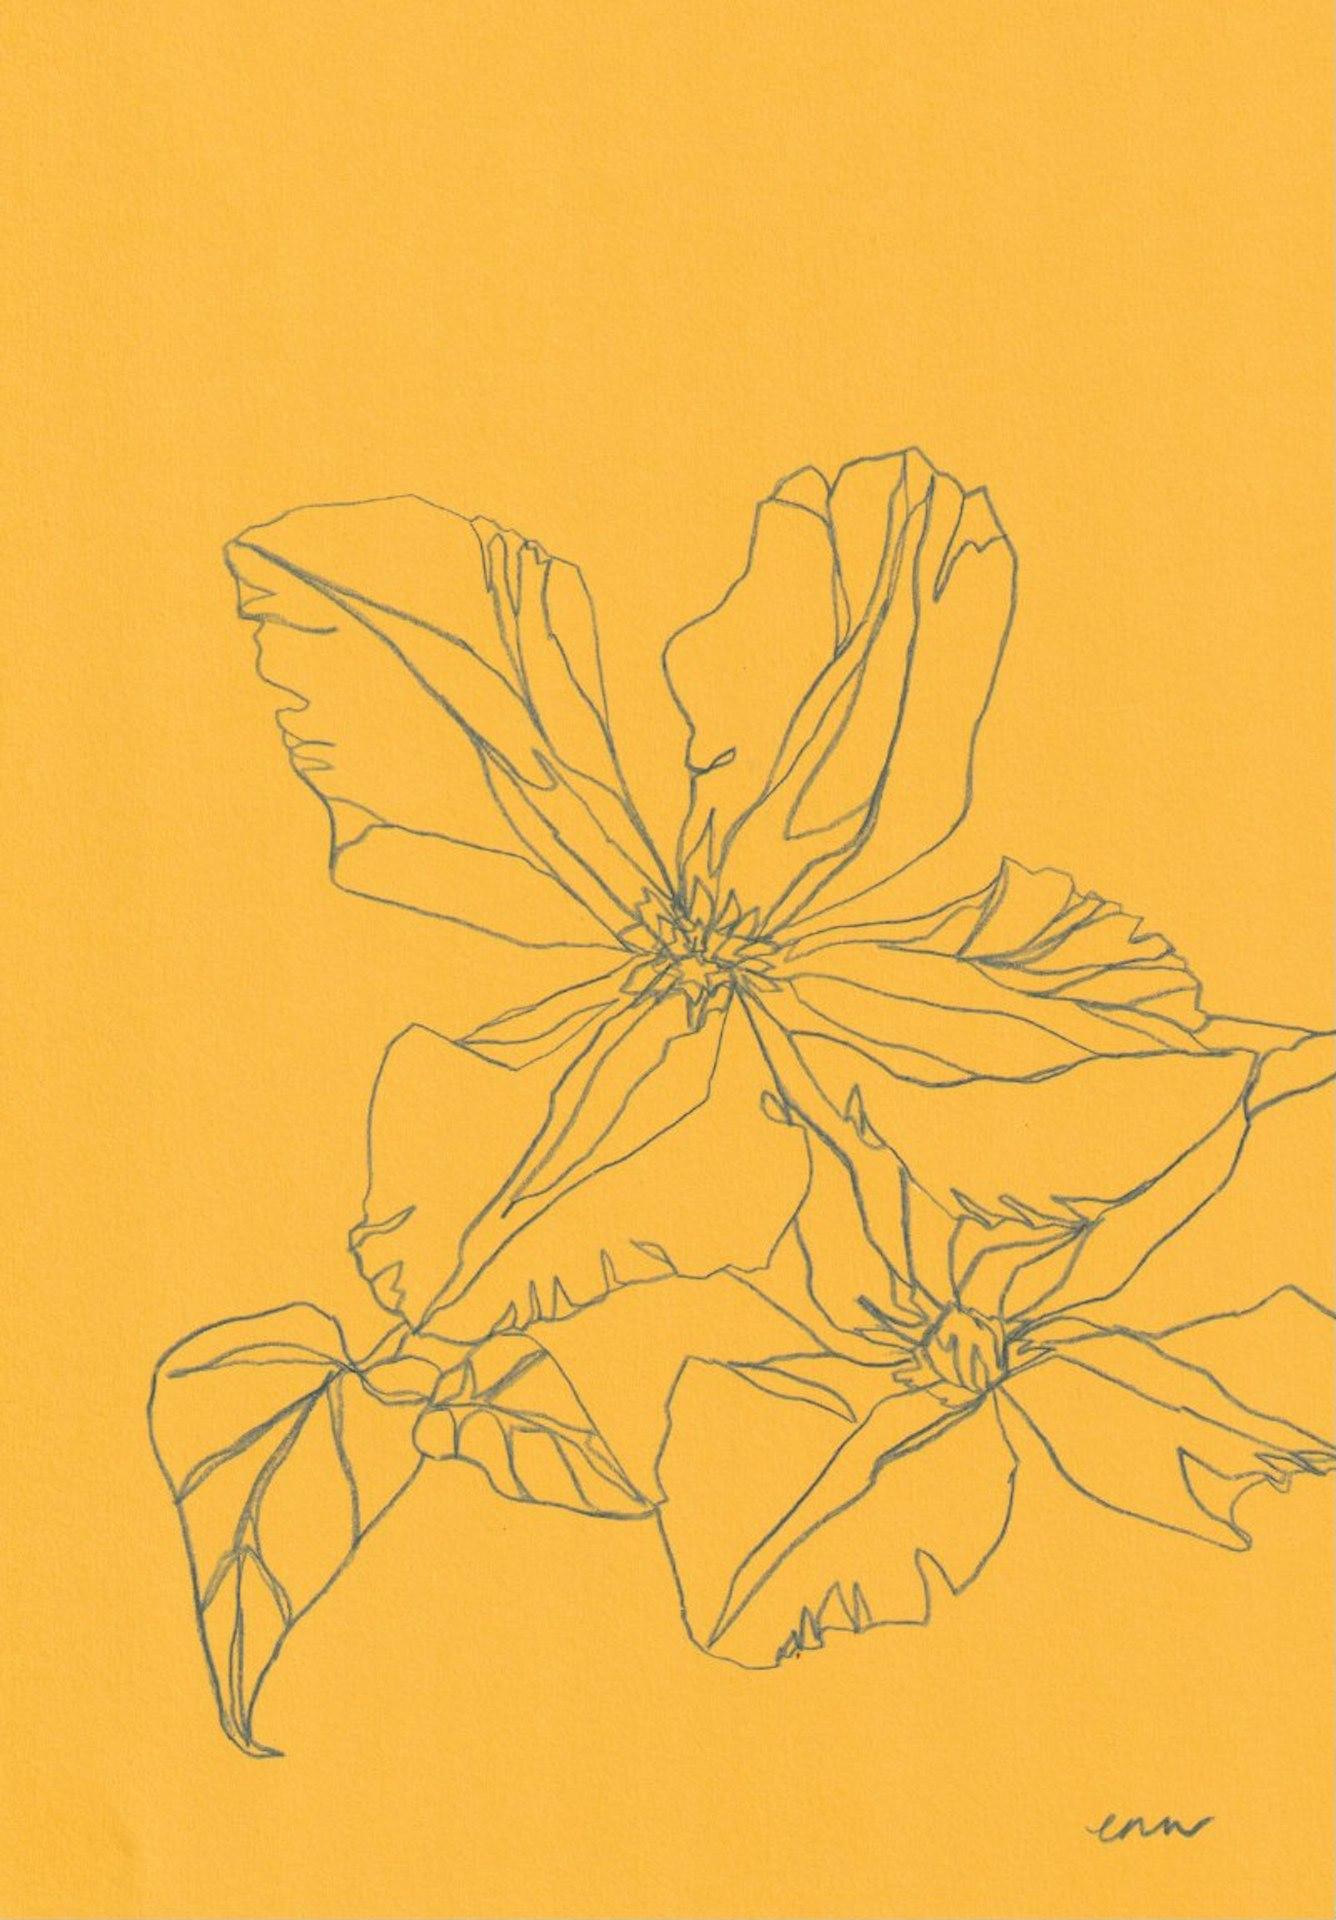 Ellen Williams
Clematis III
Dessin original - crayon de couleur sur papier A4 150gsm
(Veuillez noter que les images in situ sont purement indicatives de l'aspect d'une pièce).

Ce dessin fait partie d'une série de dessins botaniques au trait